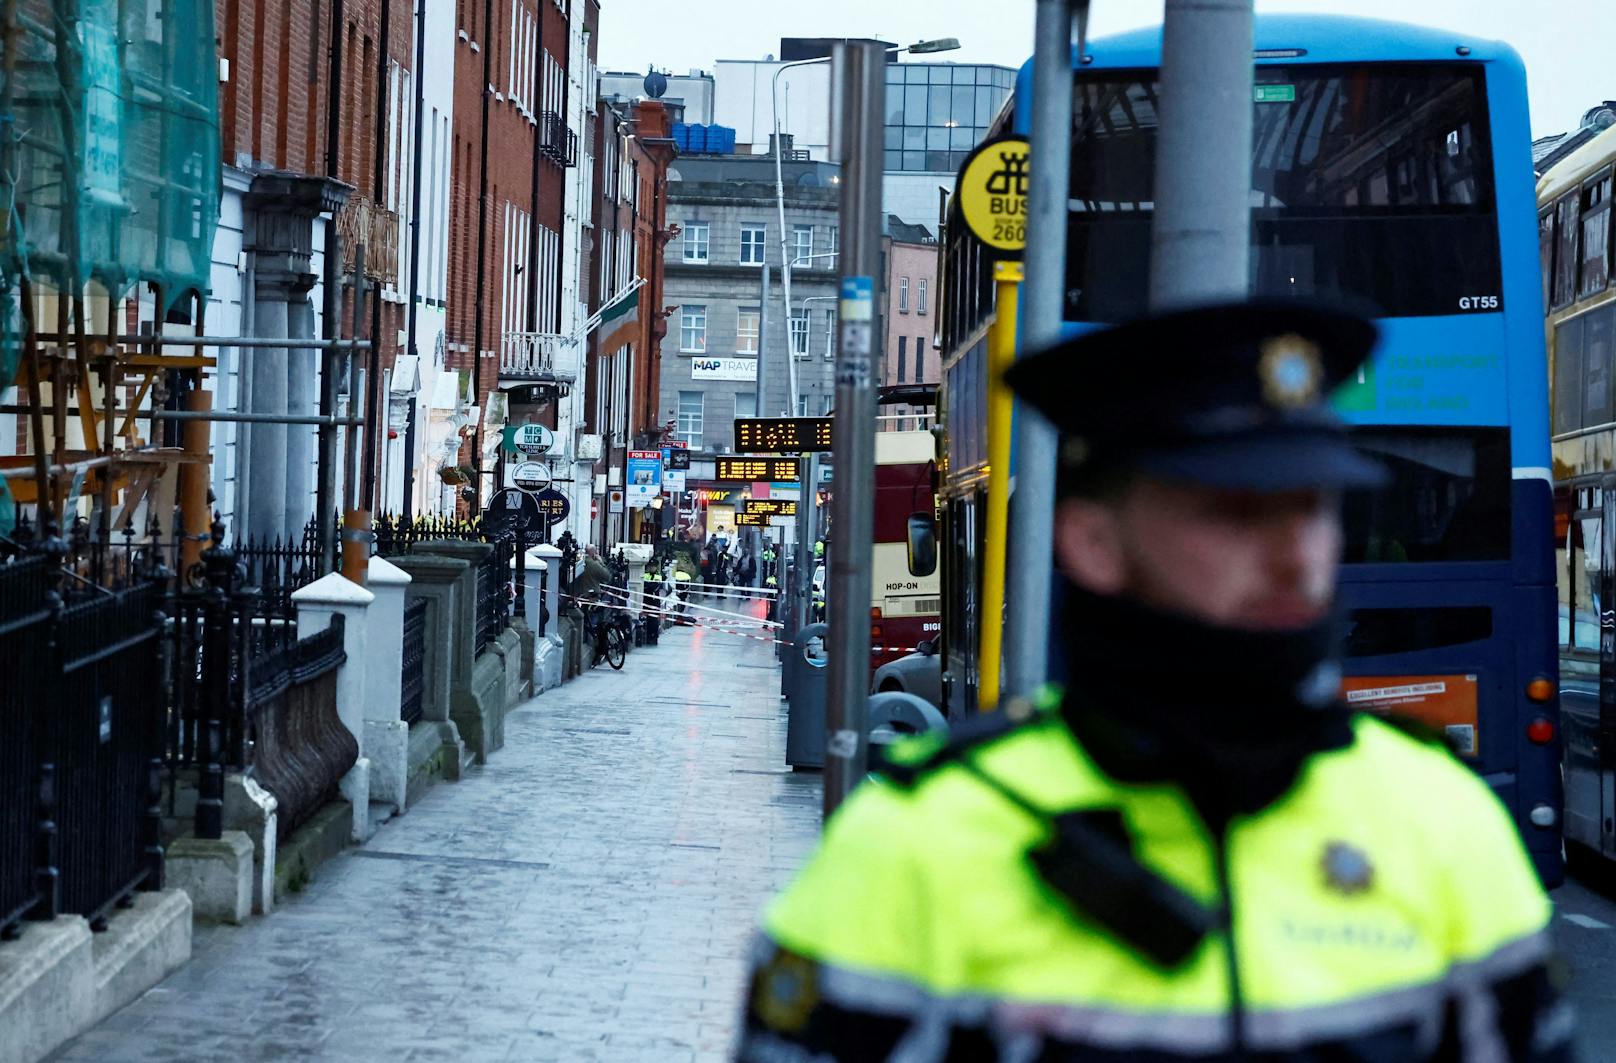 Wie der irische Rundfunksender RTÉ berichtete, wurden drei Kinder nach dem Vorfall am Parnell Square East im Zentrum der Stadt mit dem Verdacht auf Stichwunden ins Spital gebracht.